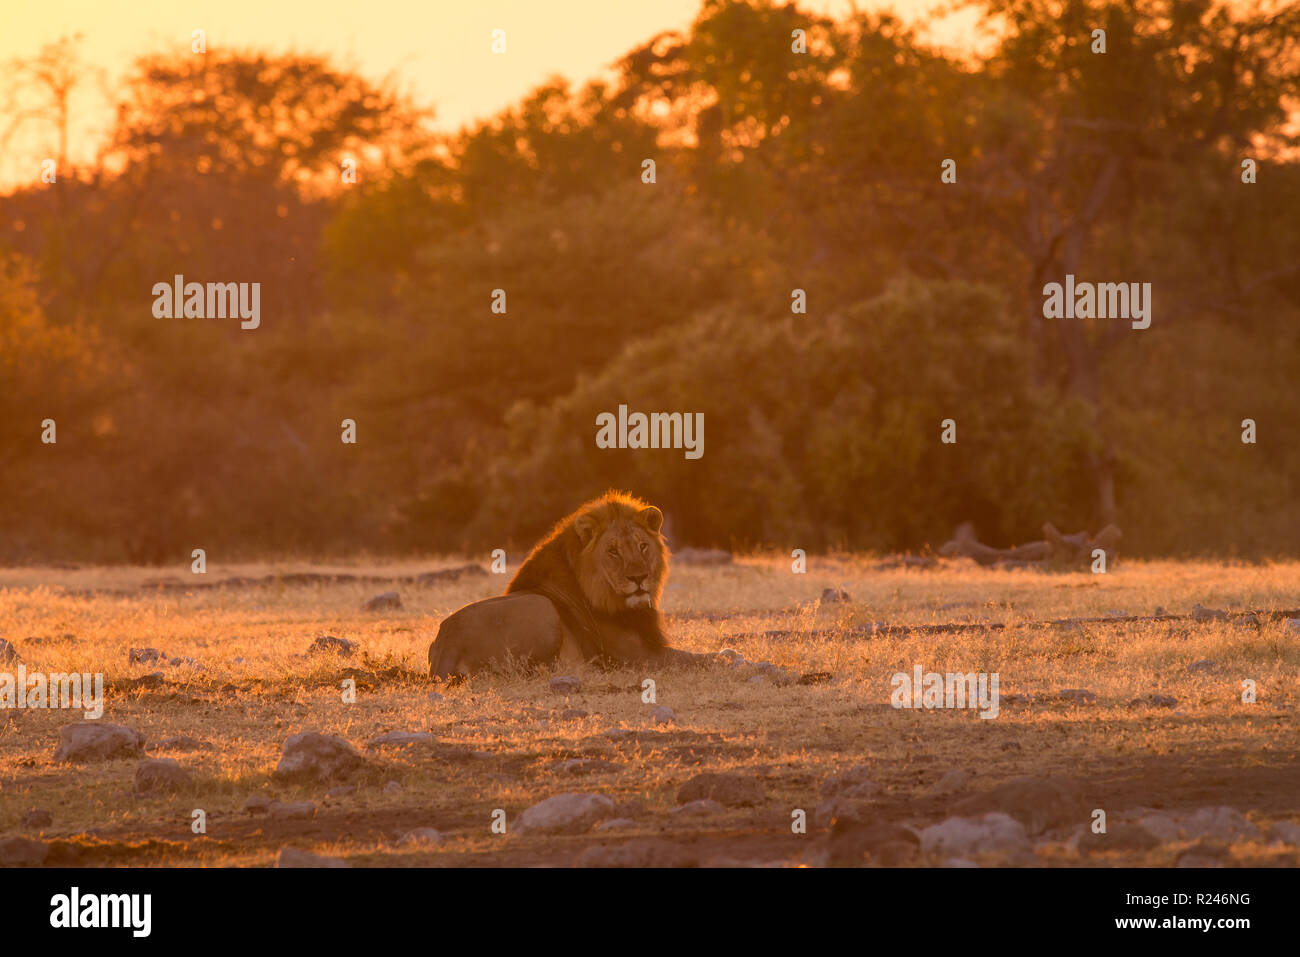 Male lion in Etosha National Park, Namibia Stock Photo